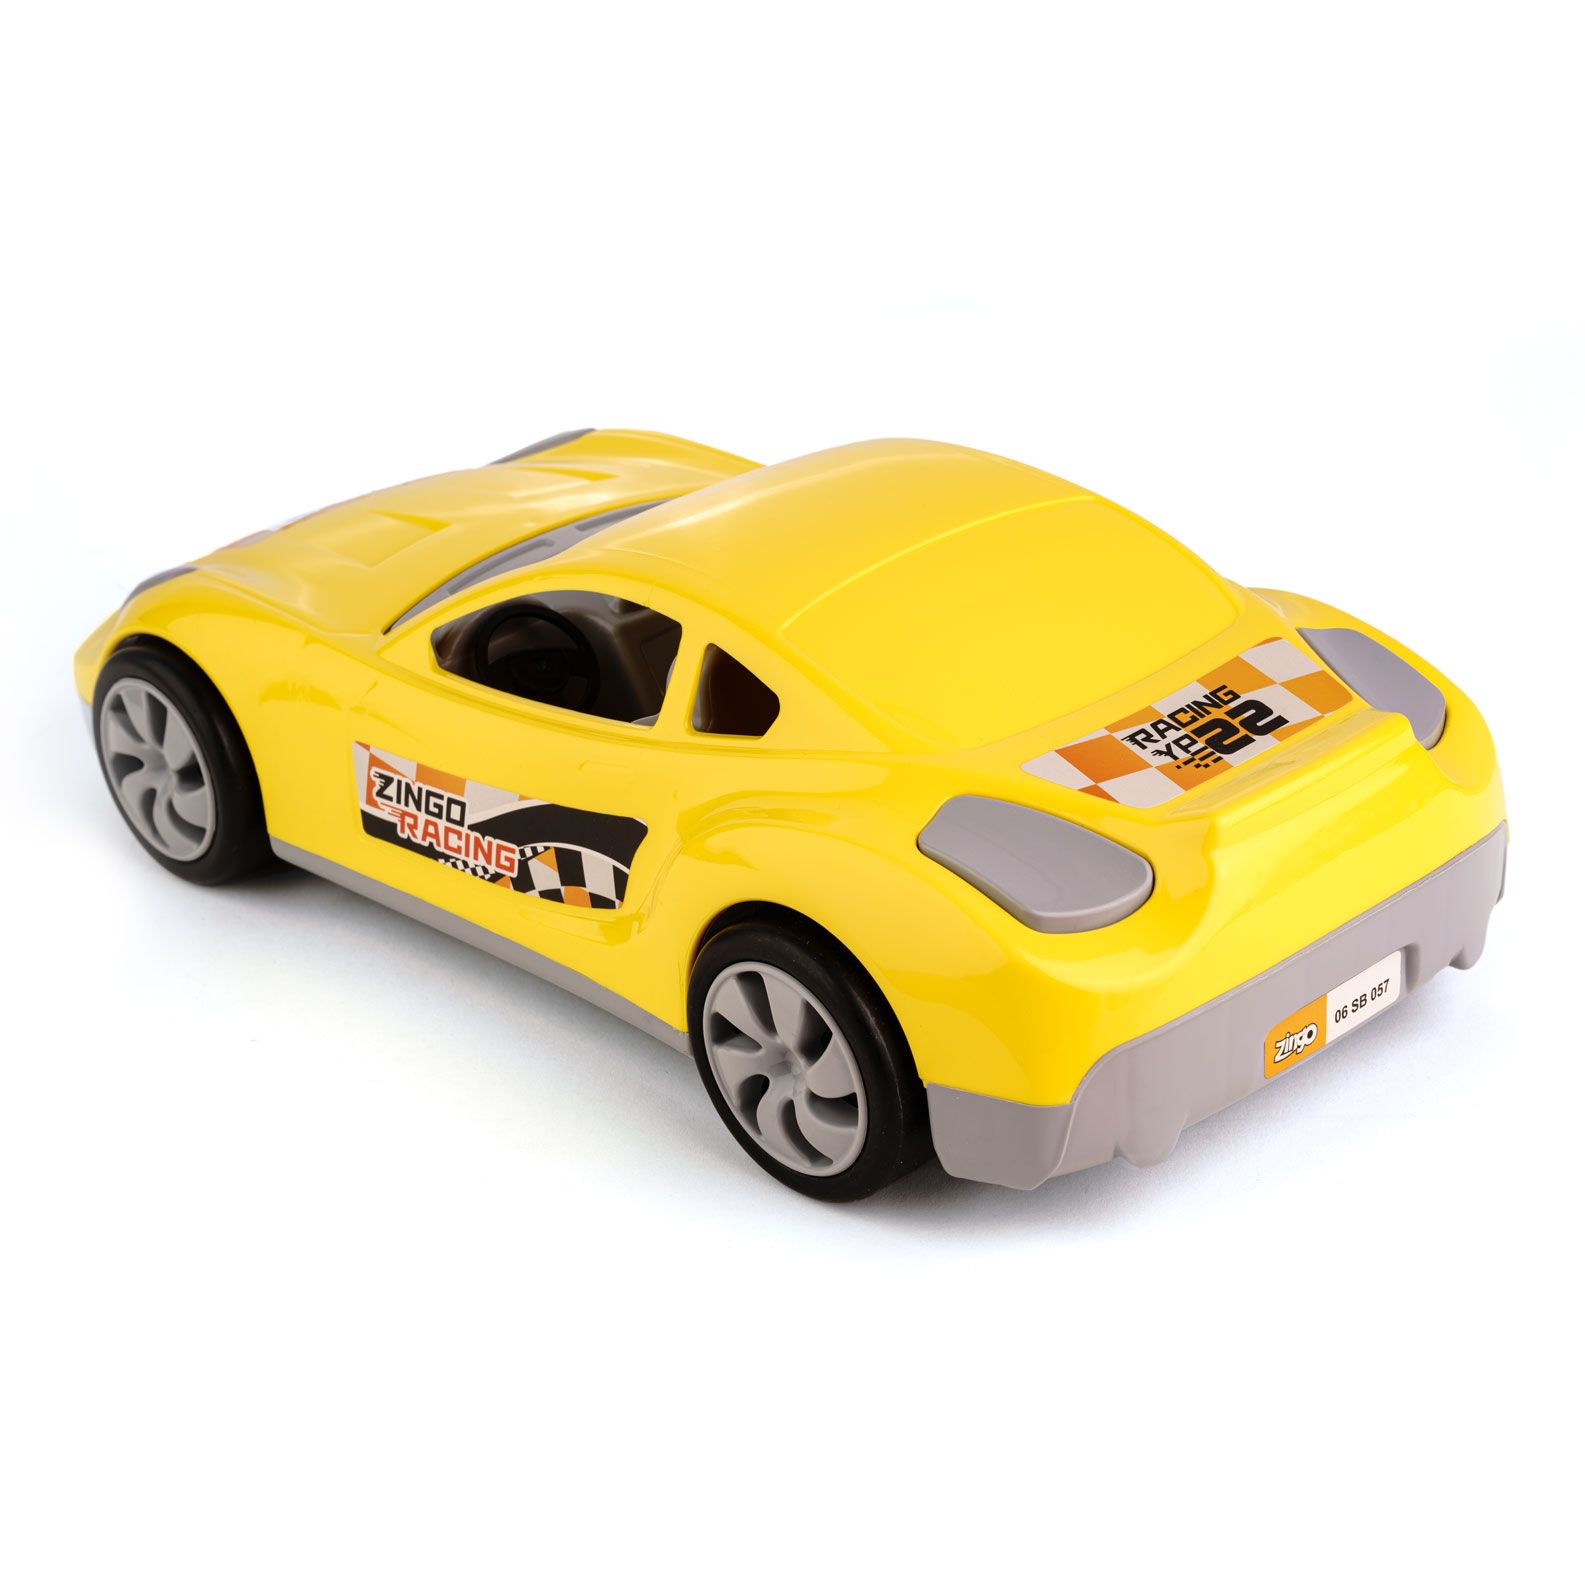 ماشین رالی کوپه زرد زینگو( 12)